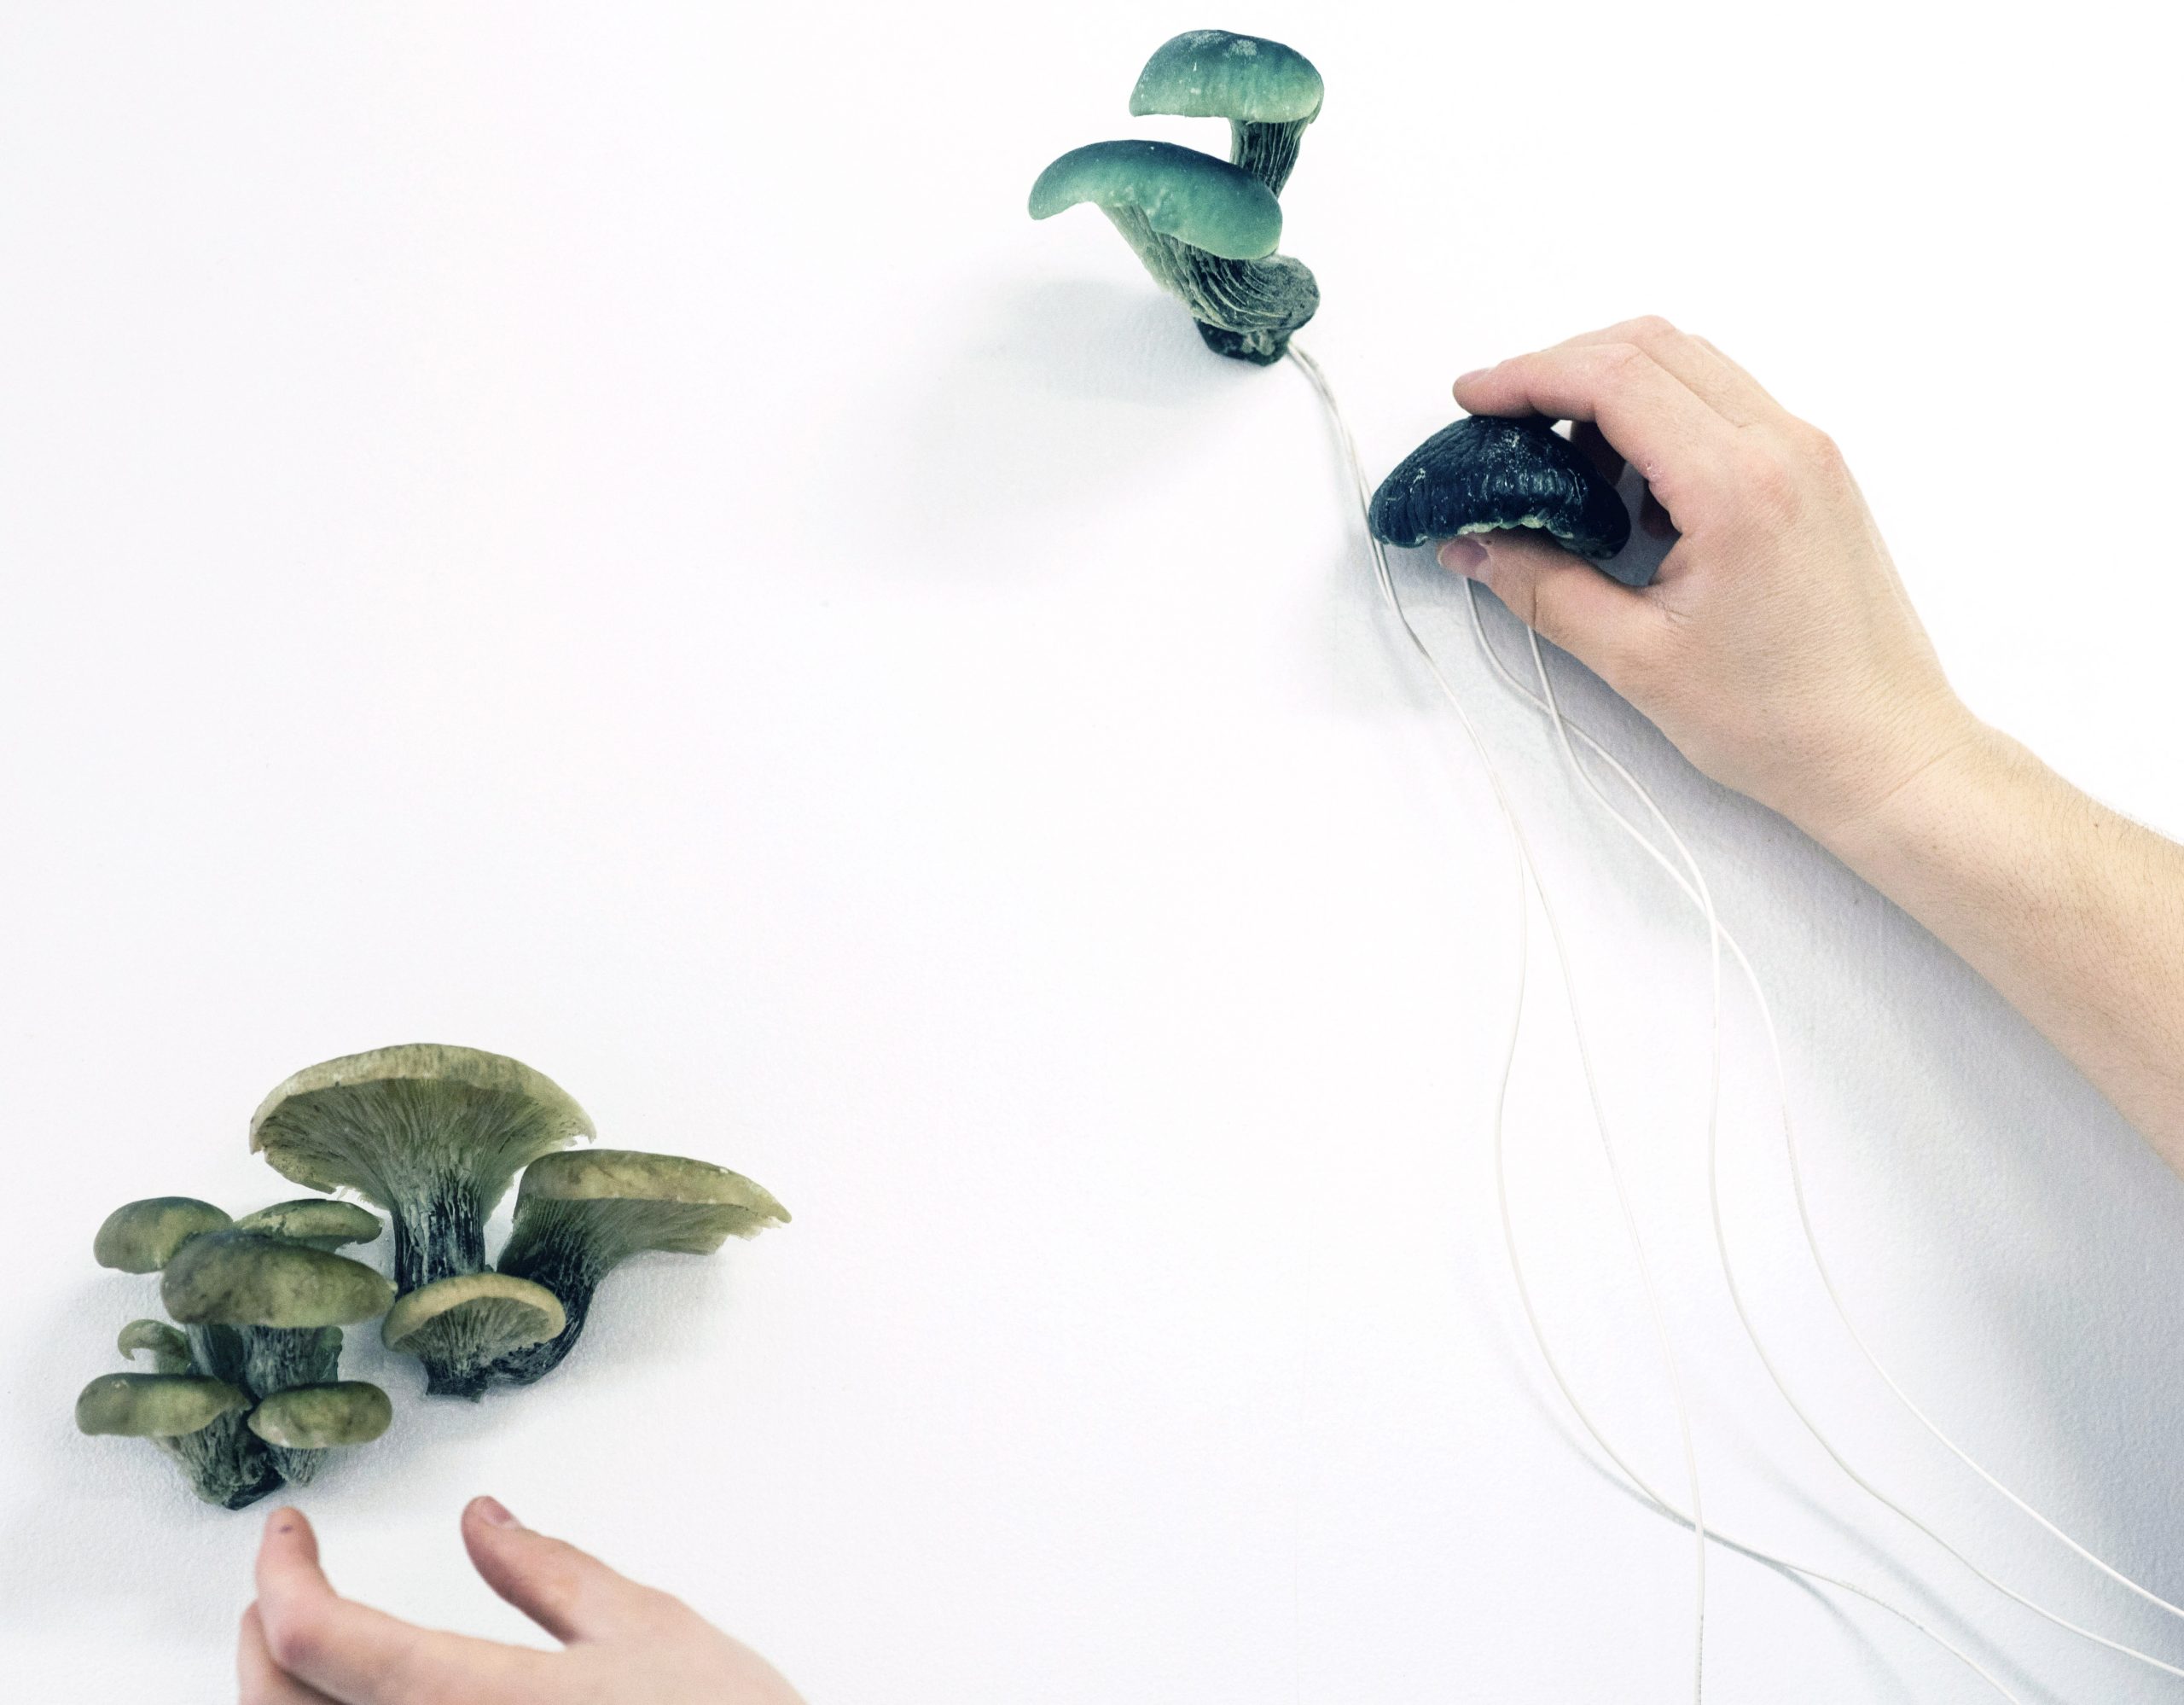 Amélie Brindamour, Nous sommes tous signaux, 2021, œuvre sculpturale sonore et lumineuse interactive (champignons moulés en résine, microcontrôleur, haut-parleur, fils électriques). Crédit photo : Llamaryon.